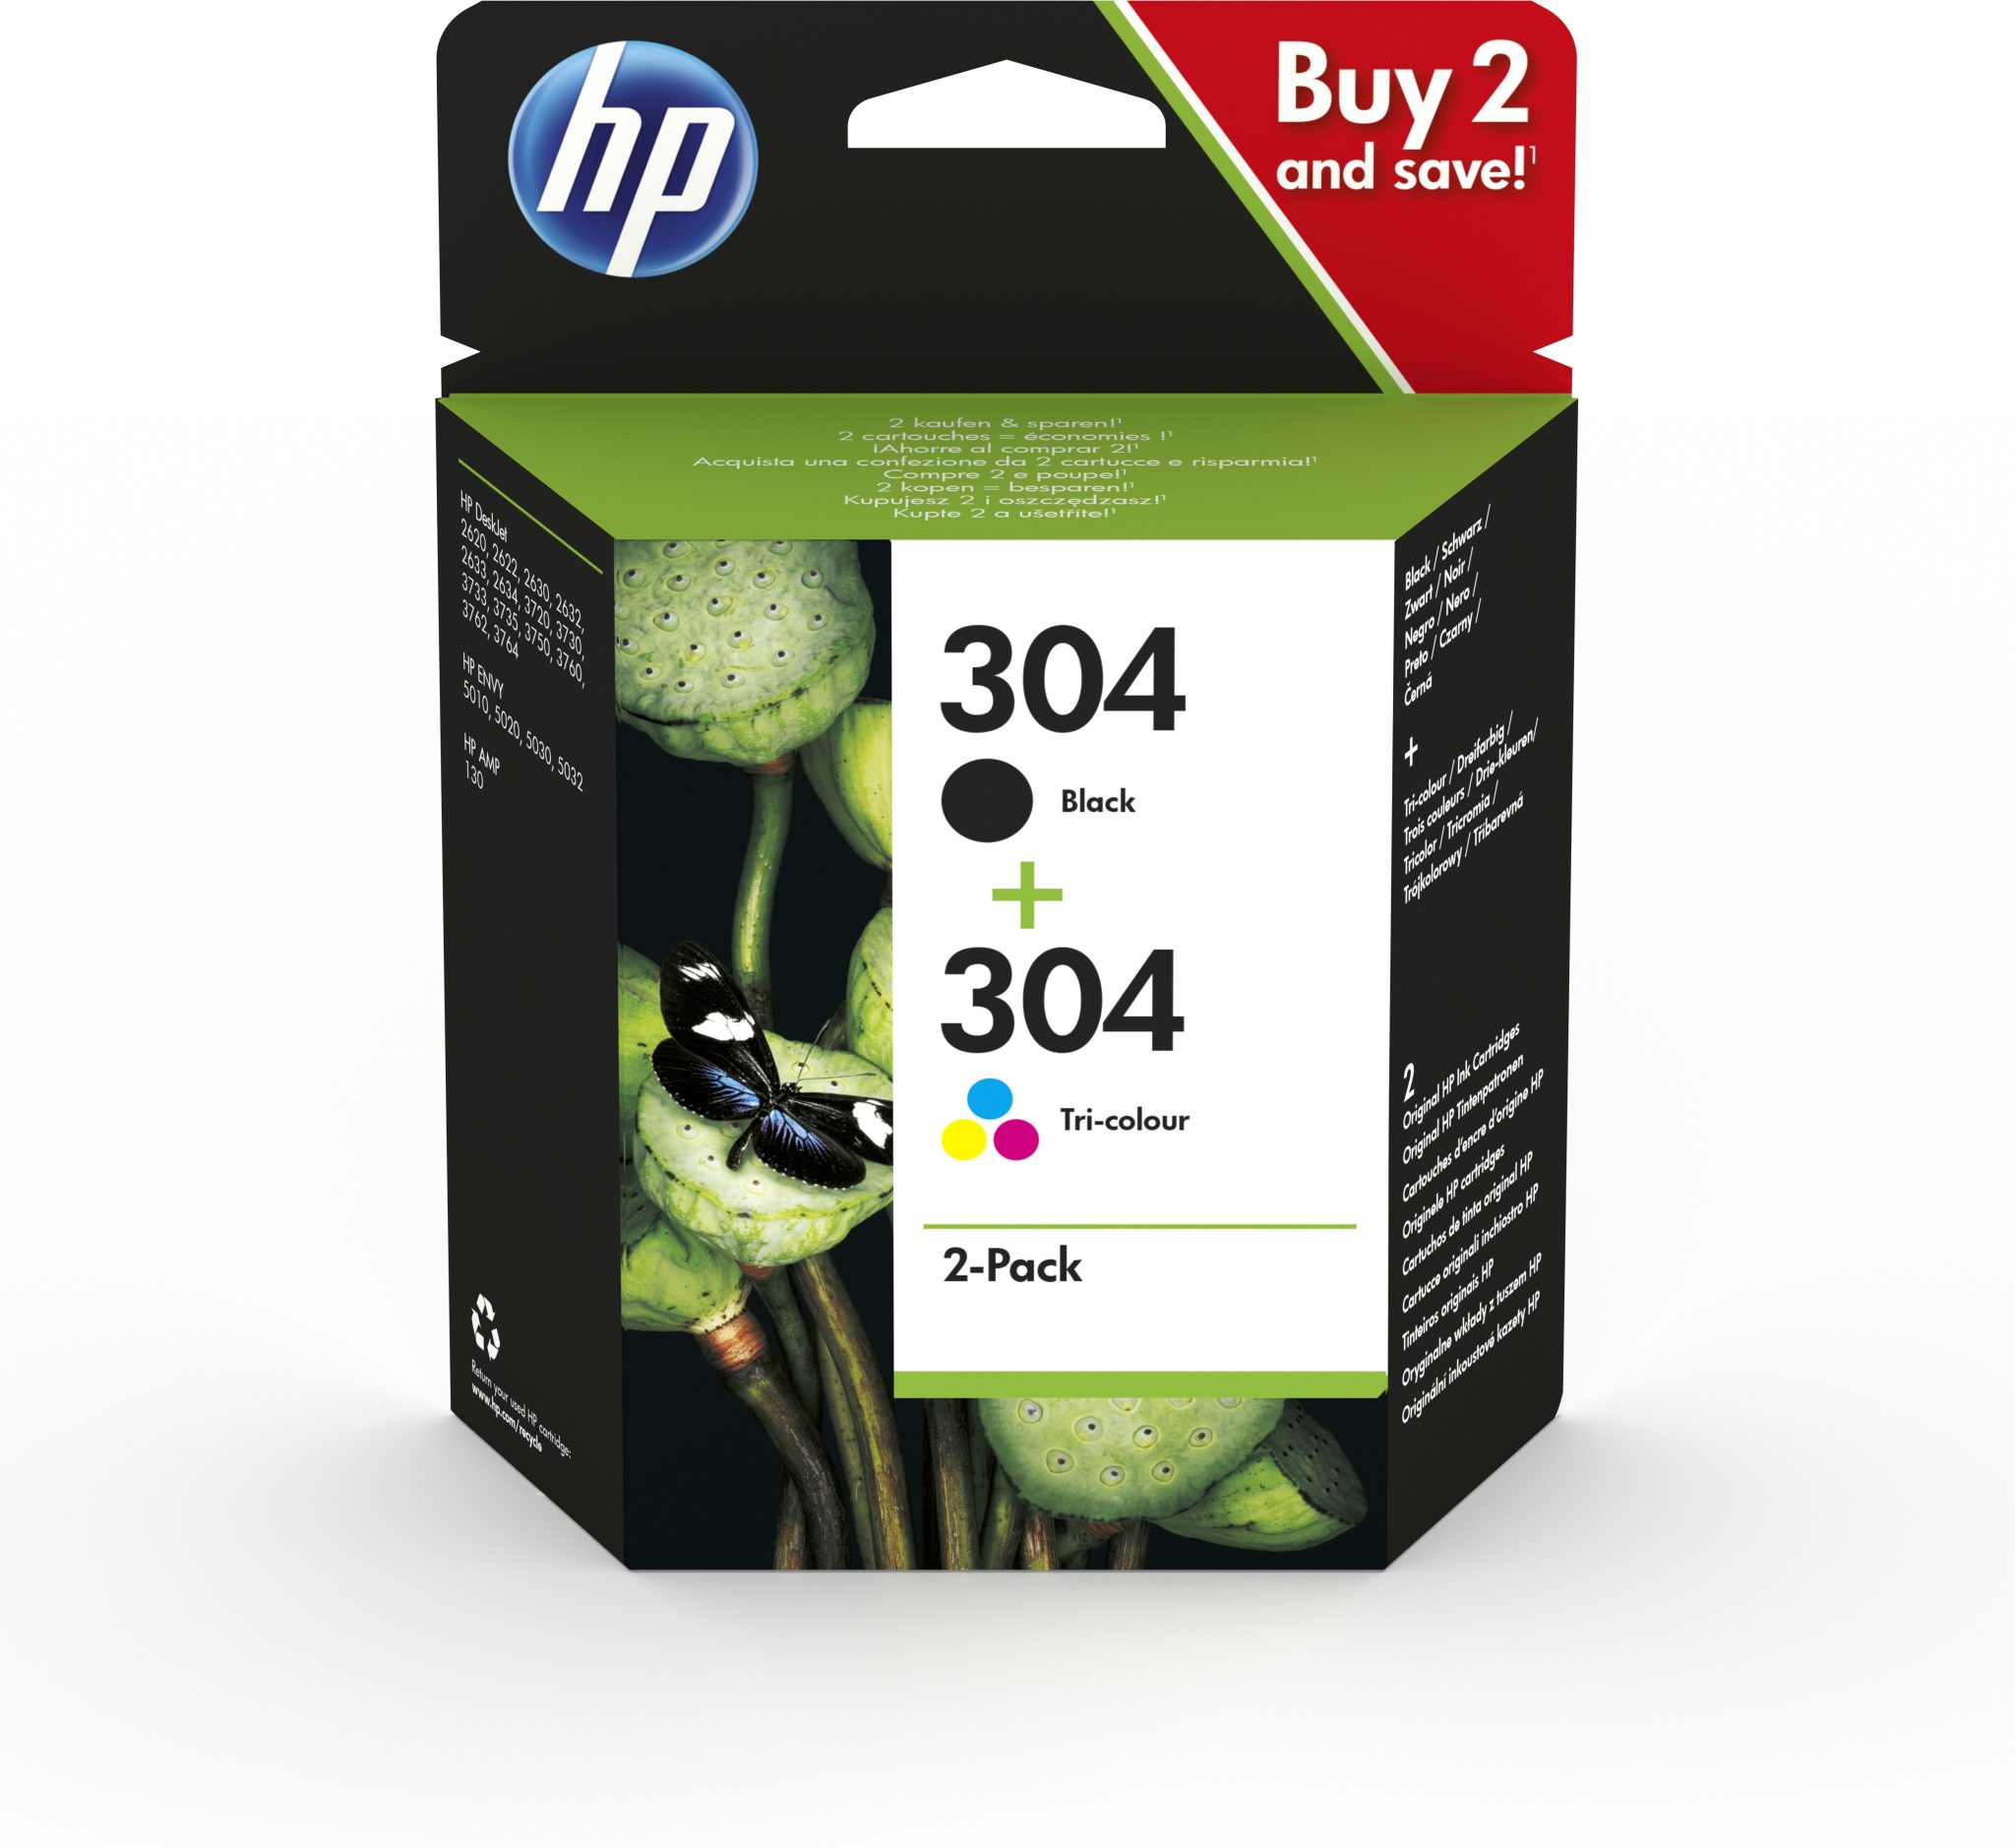 HP Inkt Cartridge 304 Black & Cyaan & Magenta & Yellow Combipack